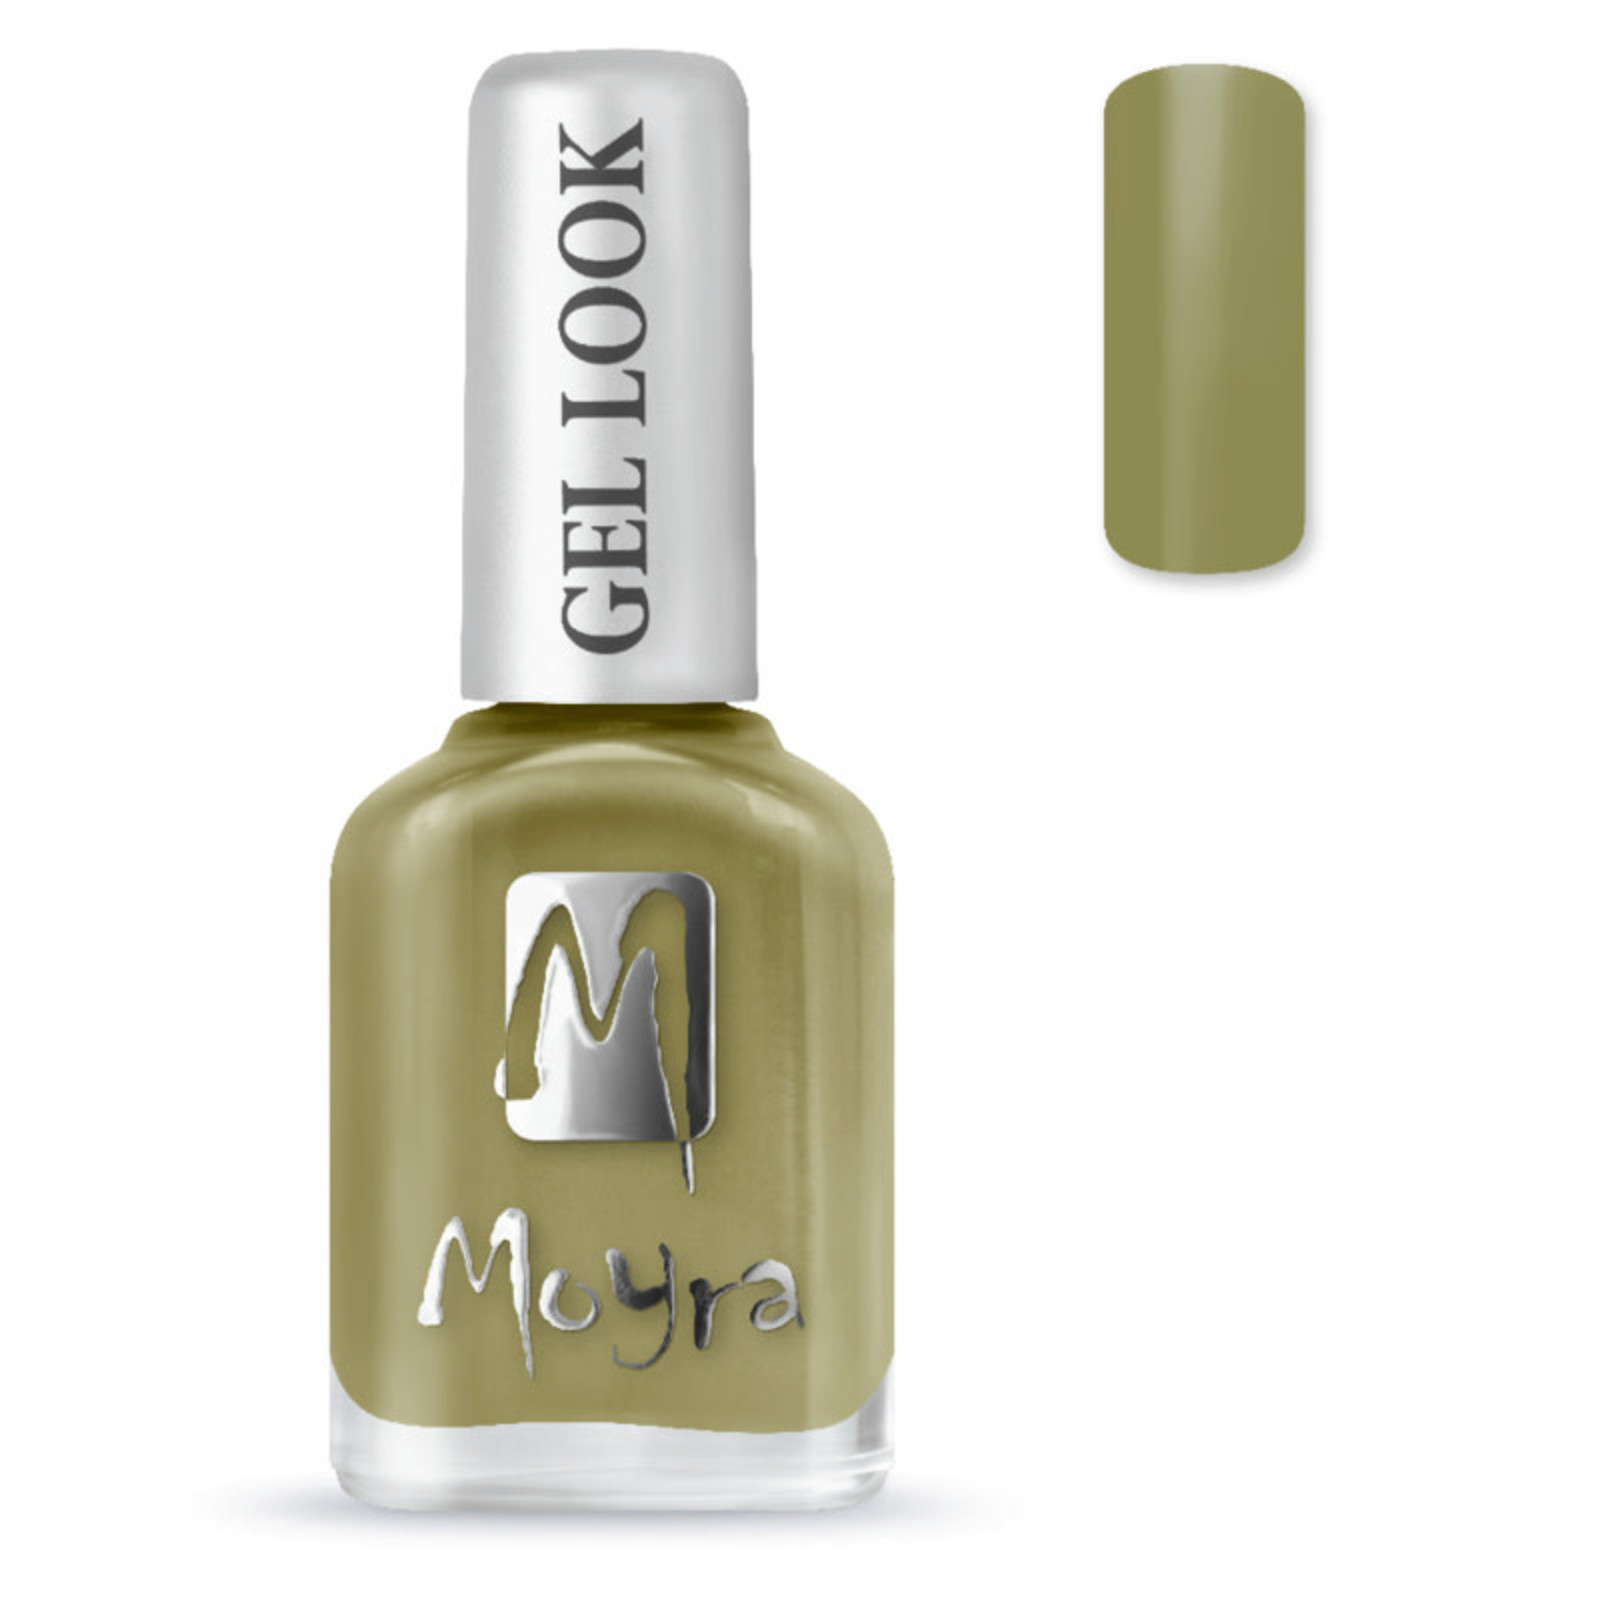 Moyra Moyra nail polish gel look 977